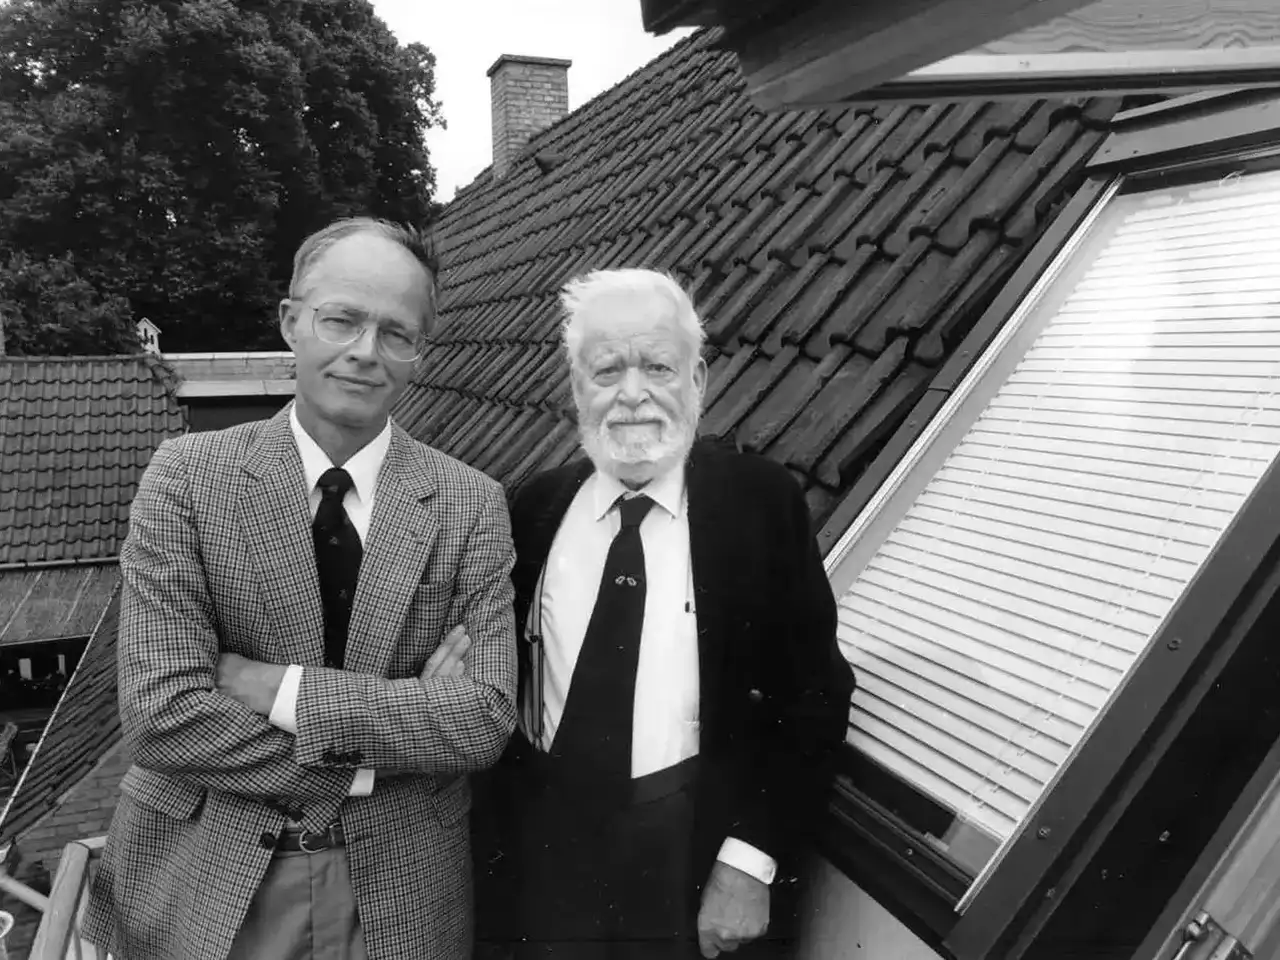 Schwarz-Weiß-Foto mit zwei Personen an einem VELUX Dachflächenfenster in einem Wohngebäude.